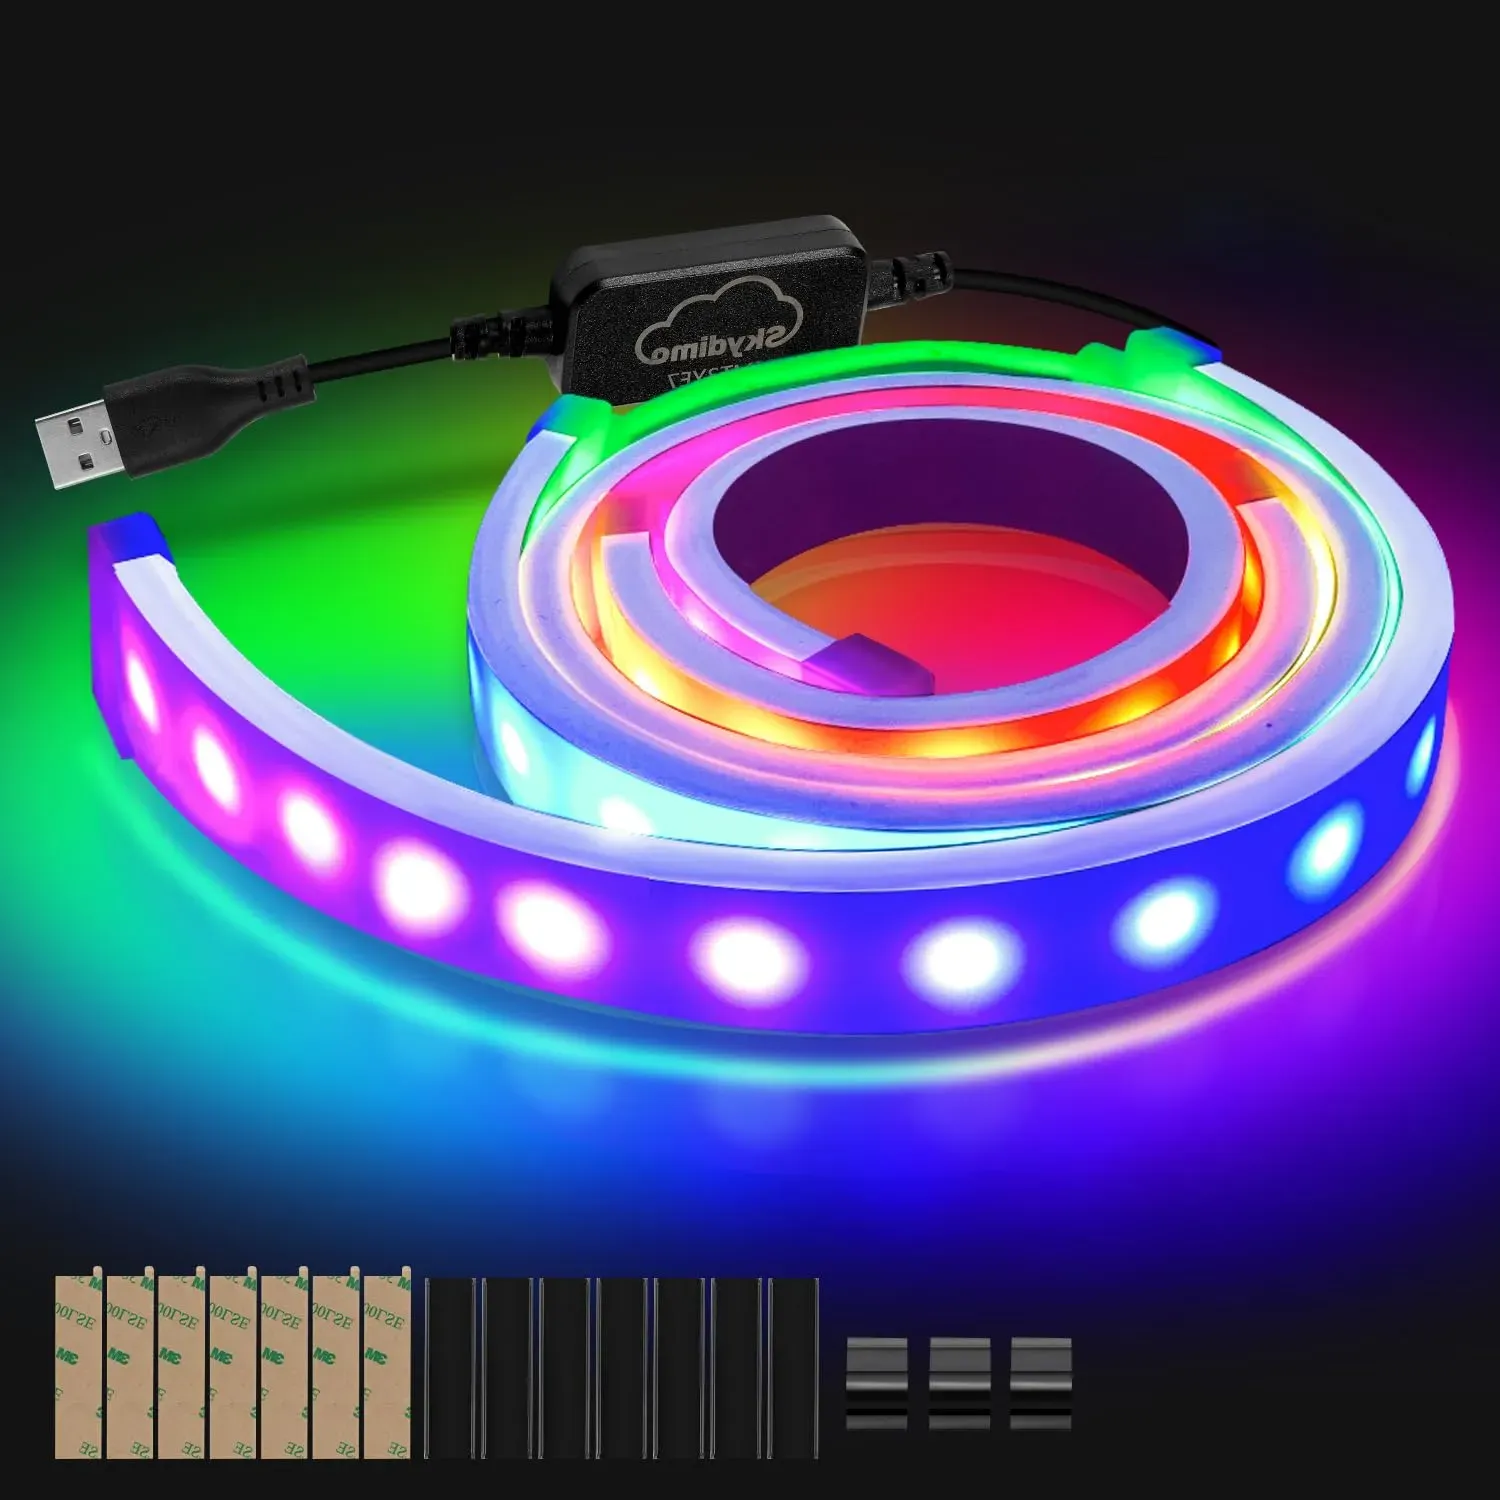 Yakimz 27 Zoll RGB Neon Streifen, 12V 5050 RGB LED Neon Light band mit App-Steuerung, Musik Sync, DIY Silikon, für Gaming Schreibtisch PC-Monitor Dekoration Beleuchtung, 2 Pack